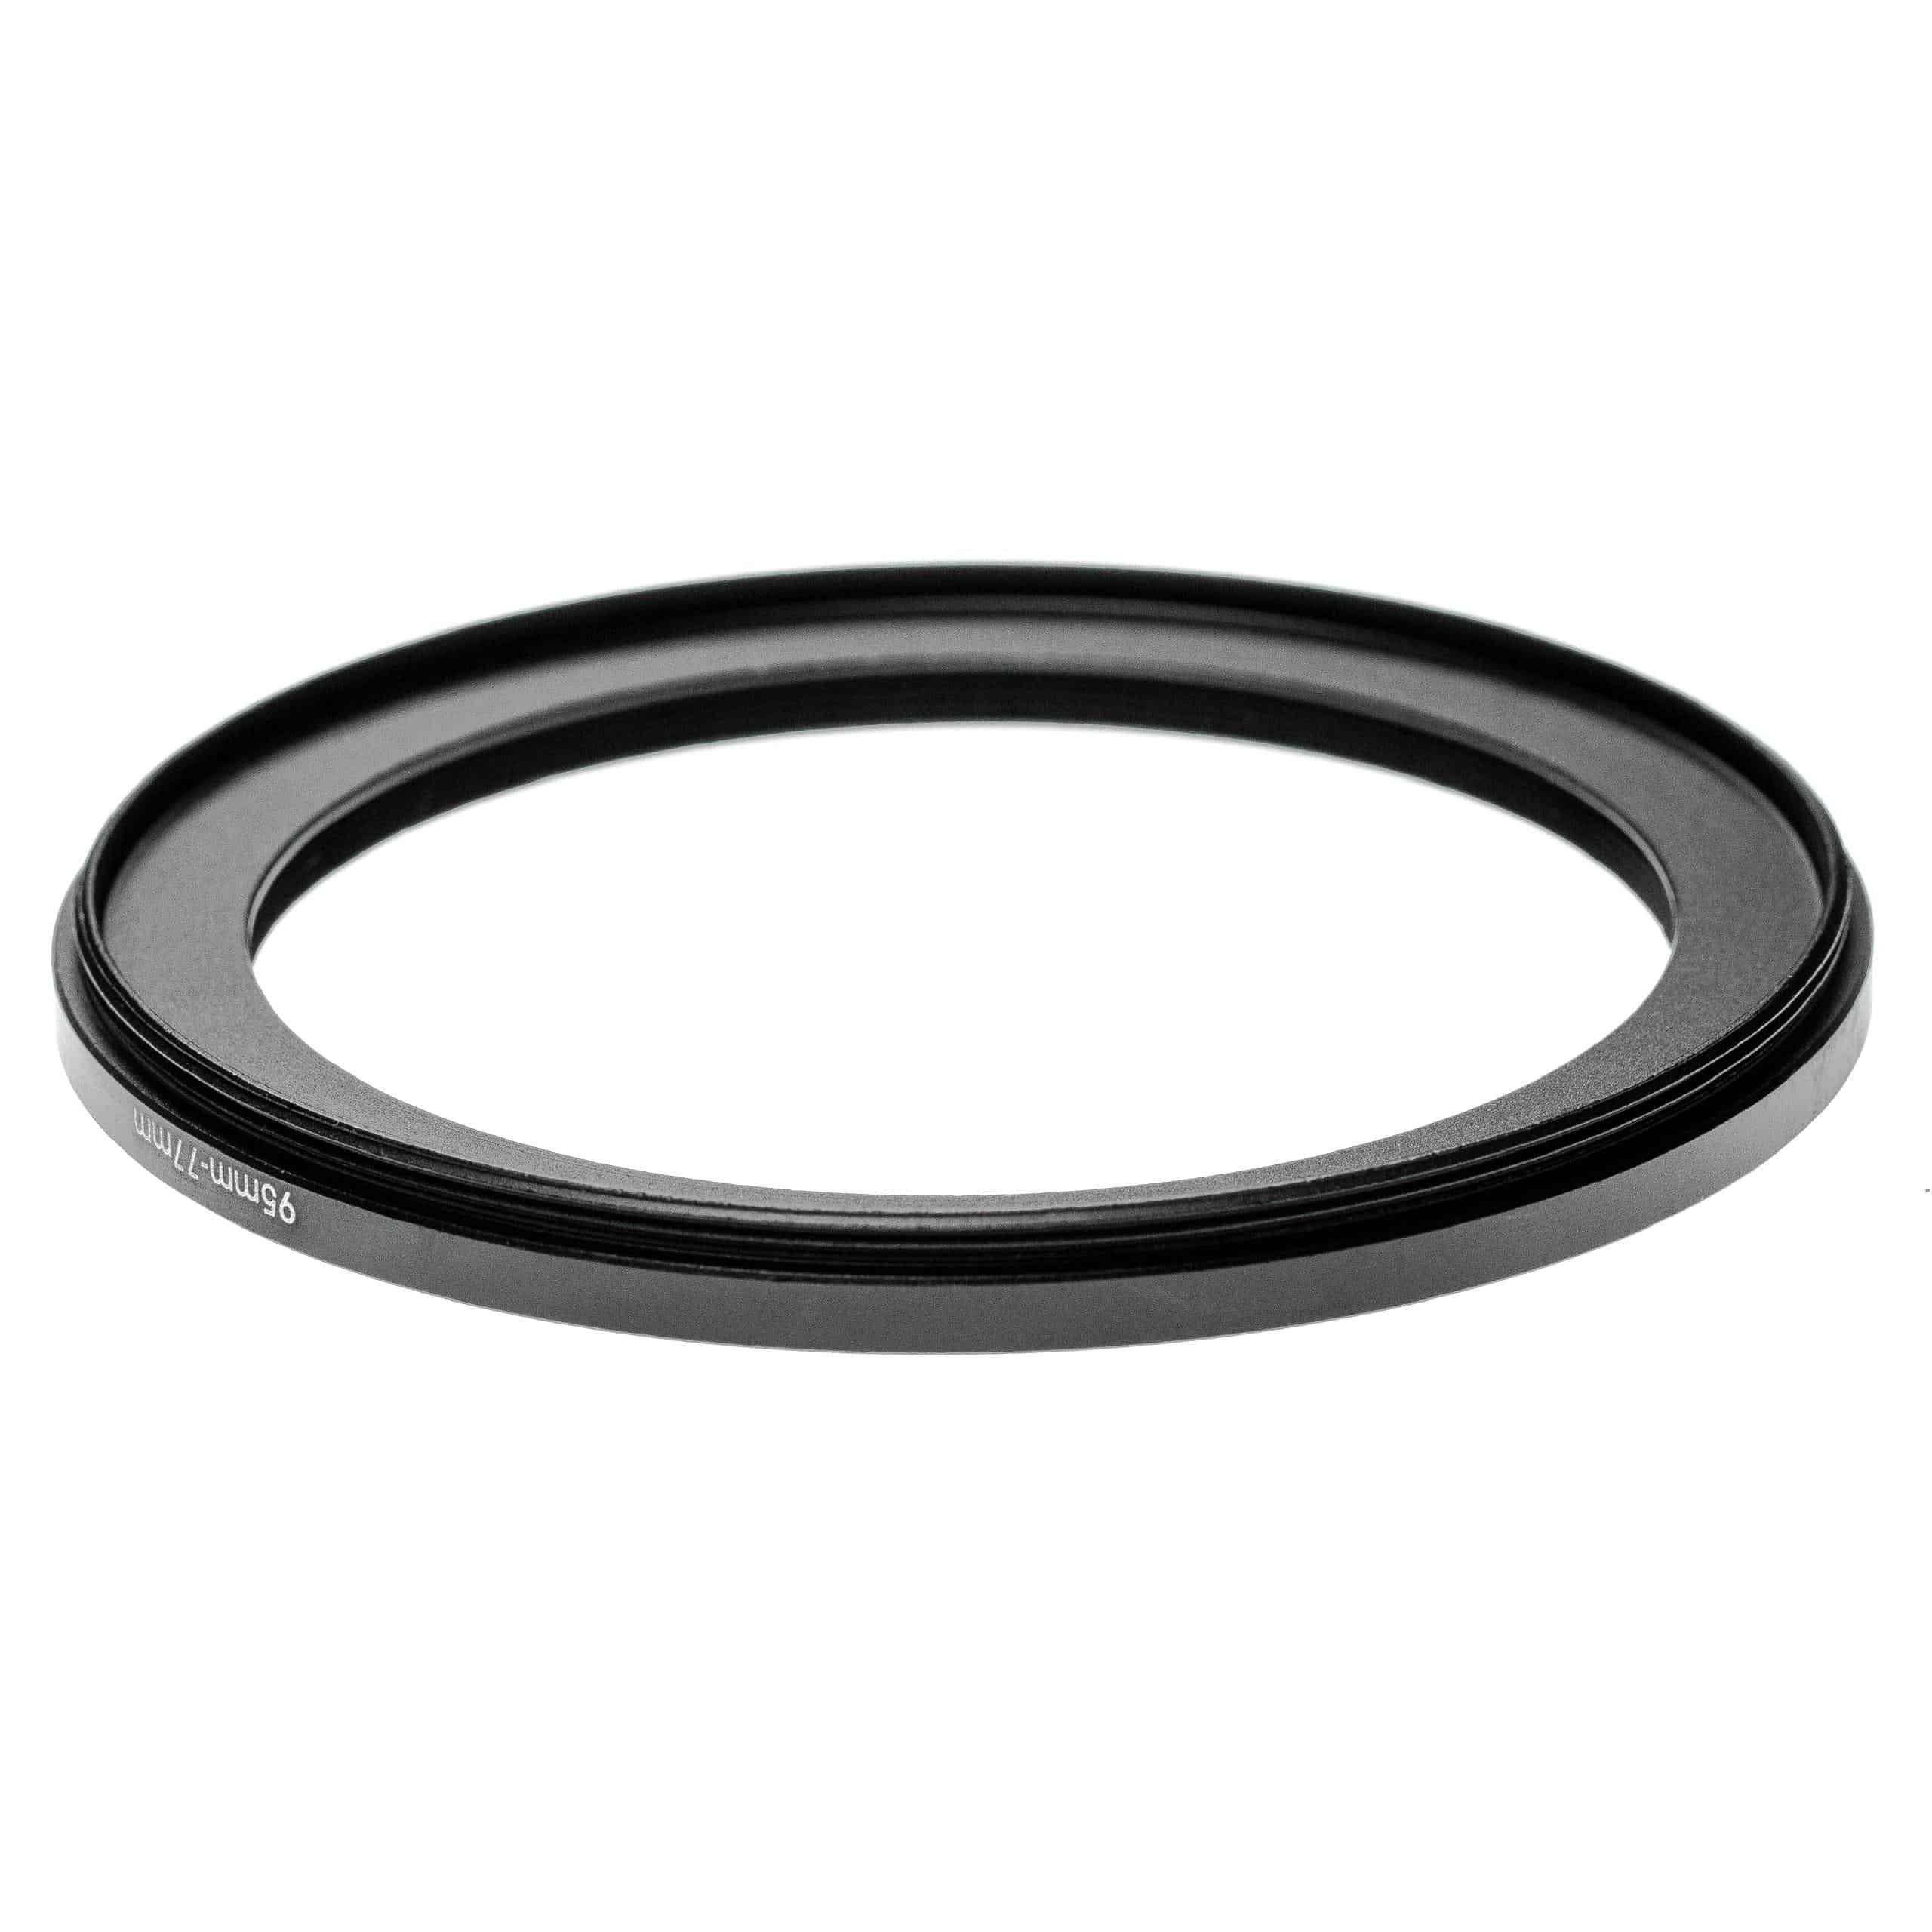 Step-Down-Ring Adapter von 95 mm auf 77 mm passend für Kamera Objektiv - Filteradapter, Aluminium (Eloxiert)